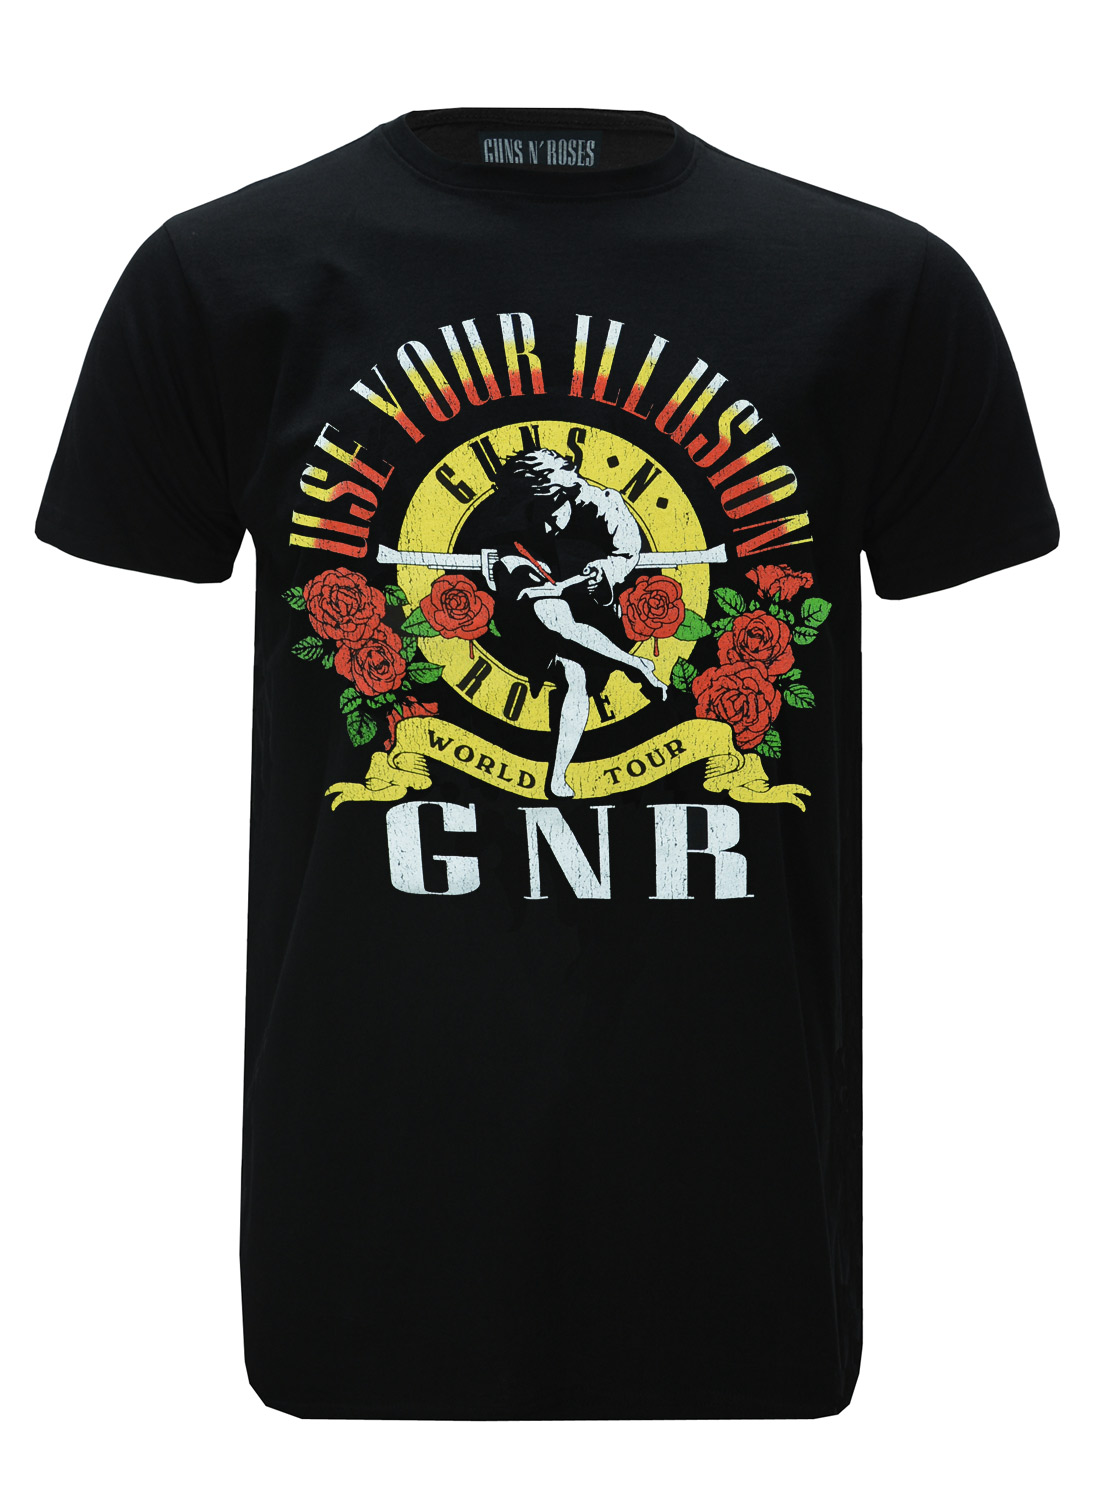 Guns N' Roses UYI World Tour T-shirt